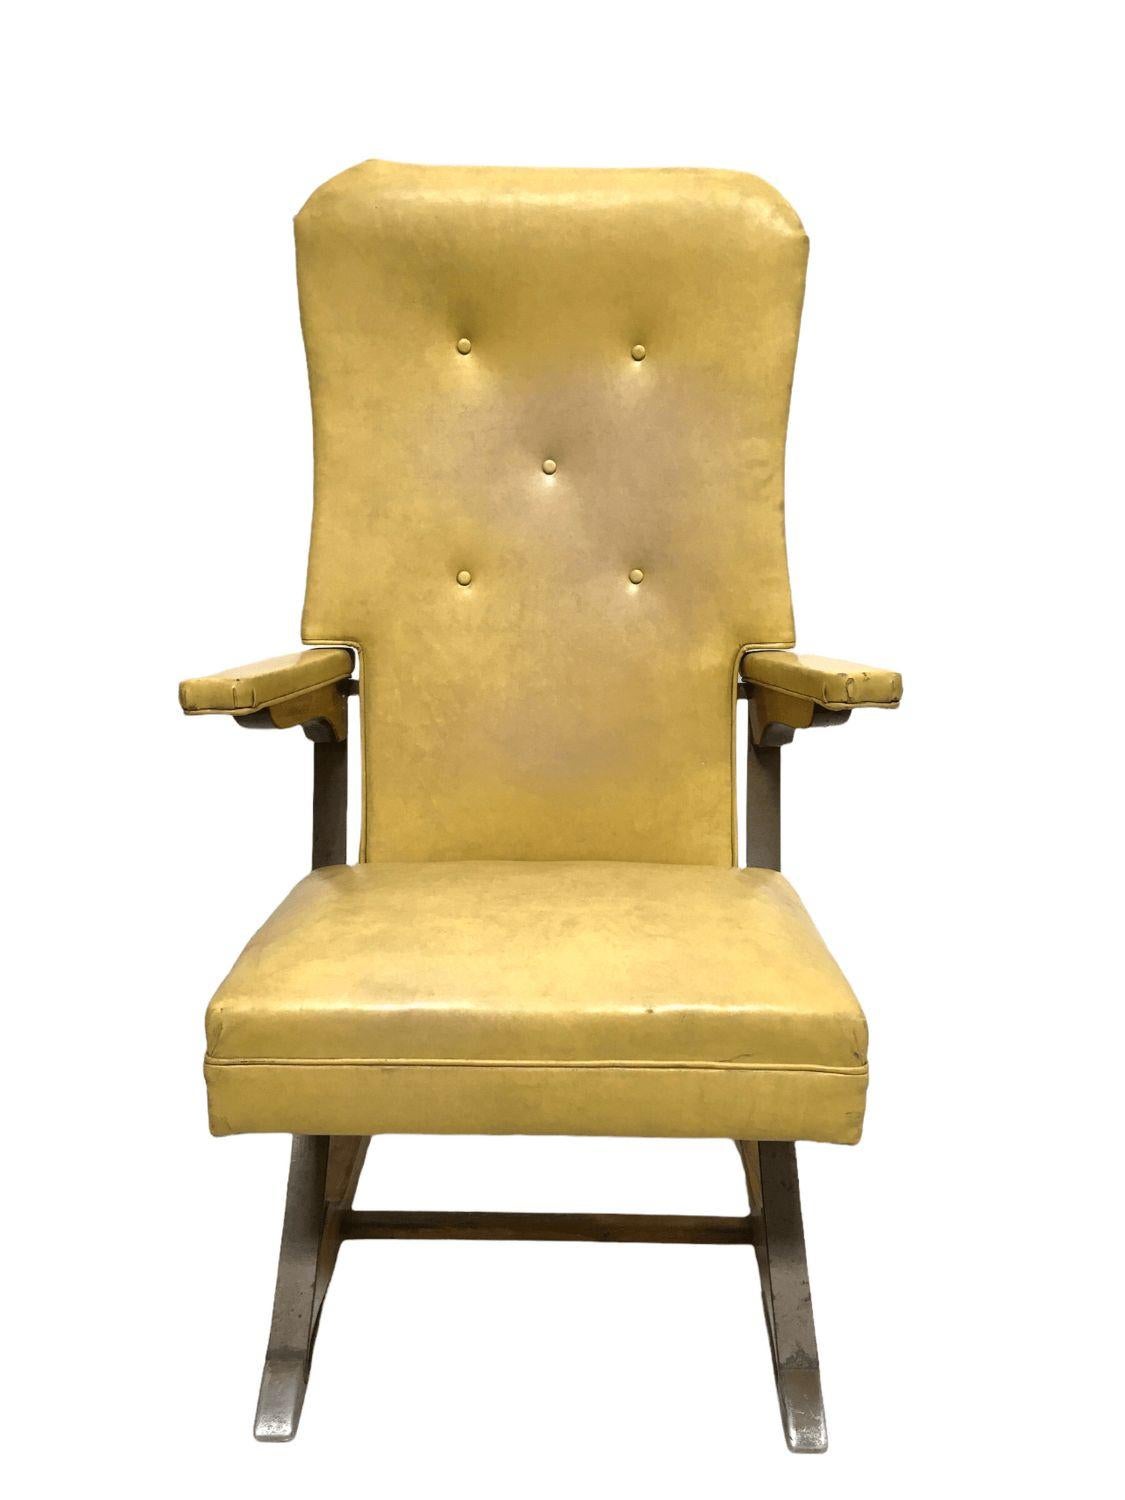 Vintage Rock-a-Chair Freischwinger in Harvest Gold Vinyl. $1,450
 
Dieser Freischwinger im Mid-Century-Stil ist mit einem goldfarbenen Vinyl bezogen. Das ursprünglich von Aldeuman Acres Manufacturing hergestellte Gestell kombiniert Holz und Metall